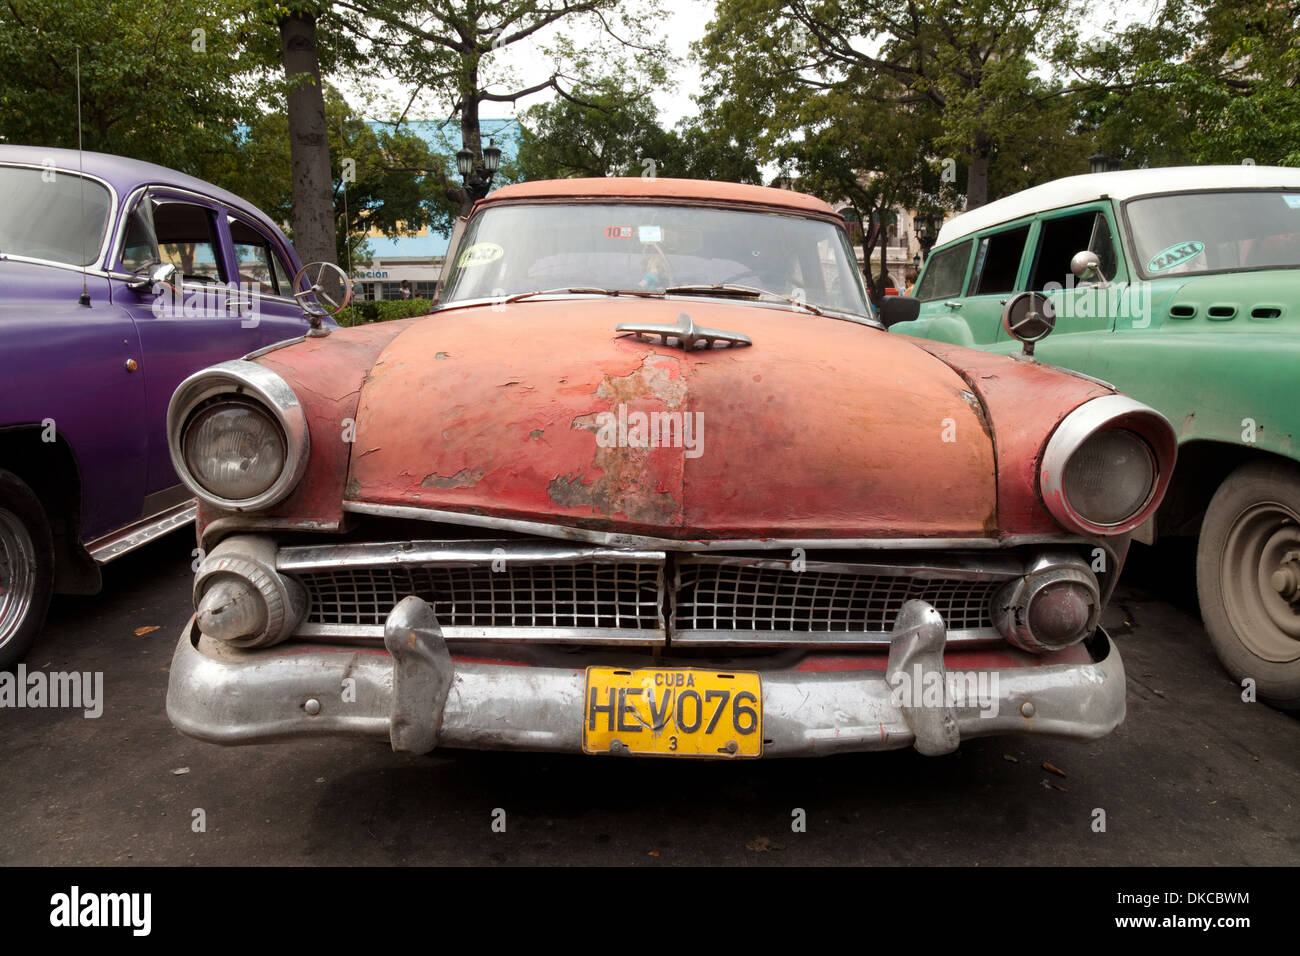 Alte amerikanische Autos aus den 1950er Jahren noch als Taxis auf den Straßen von Havanna, Kuba, Karibik verwendet wird Stockfoto